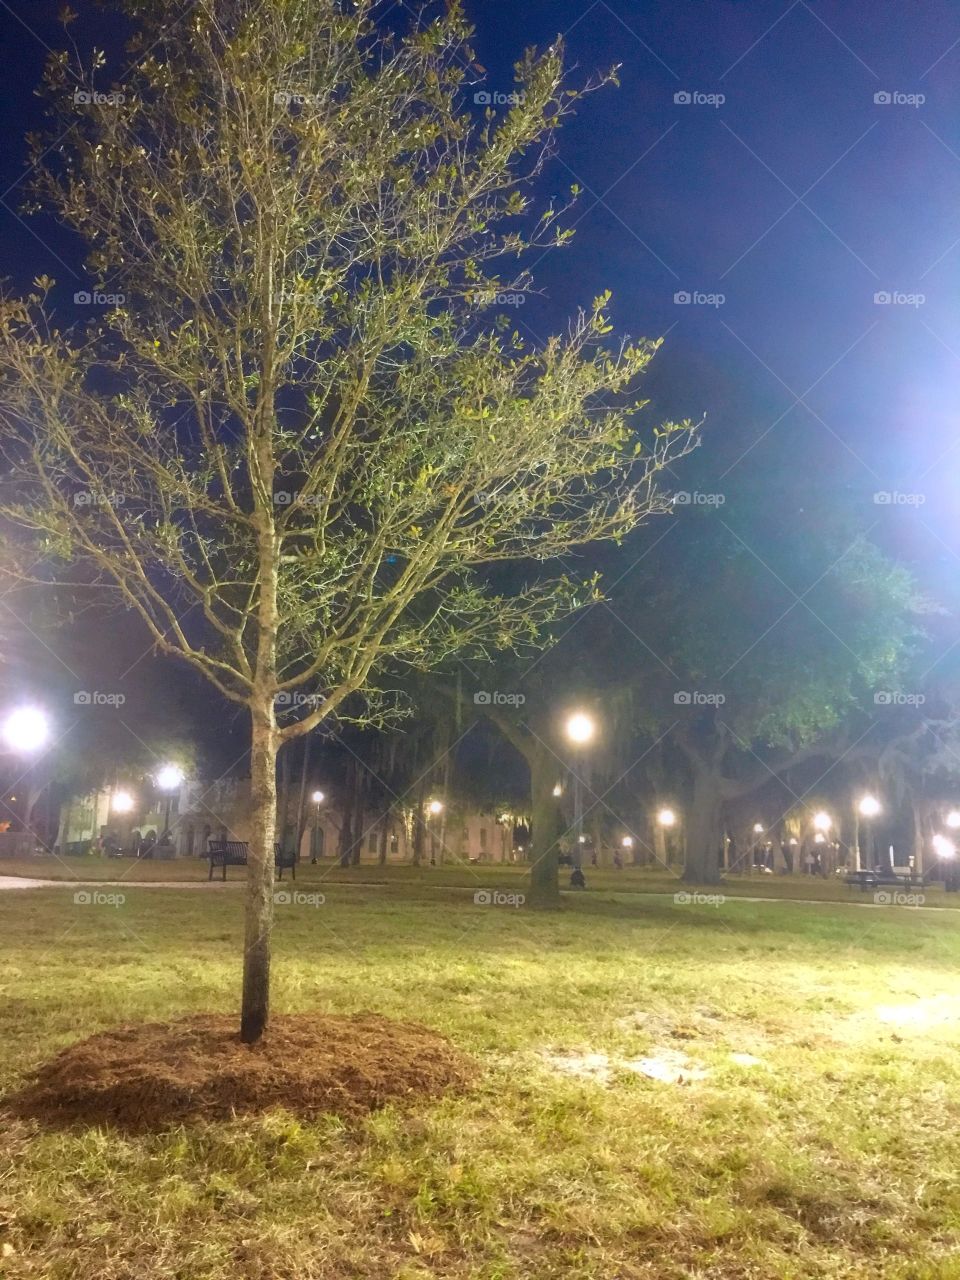 Sims Park at night